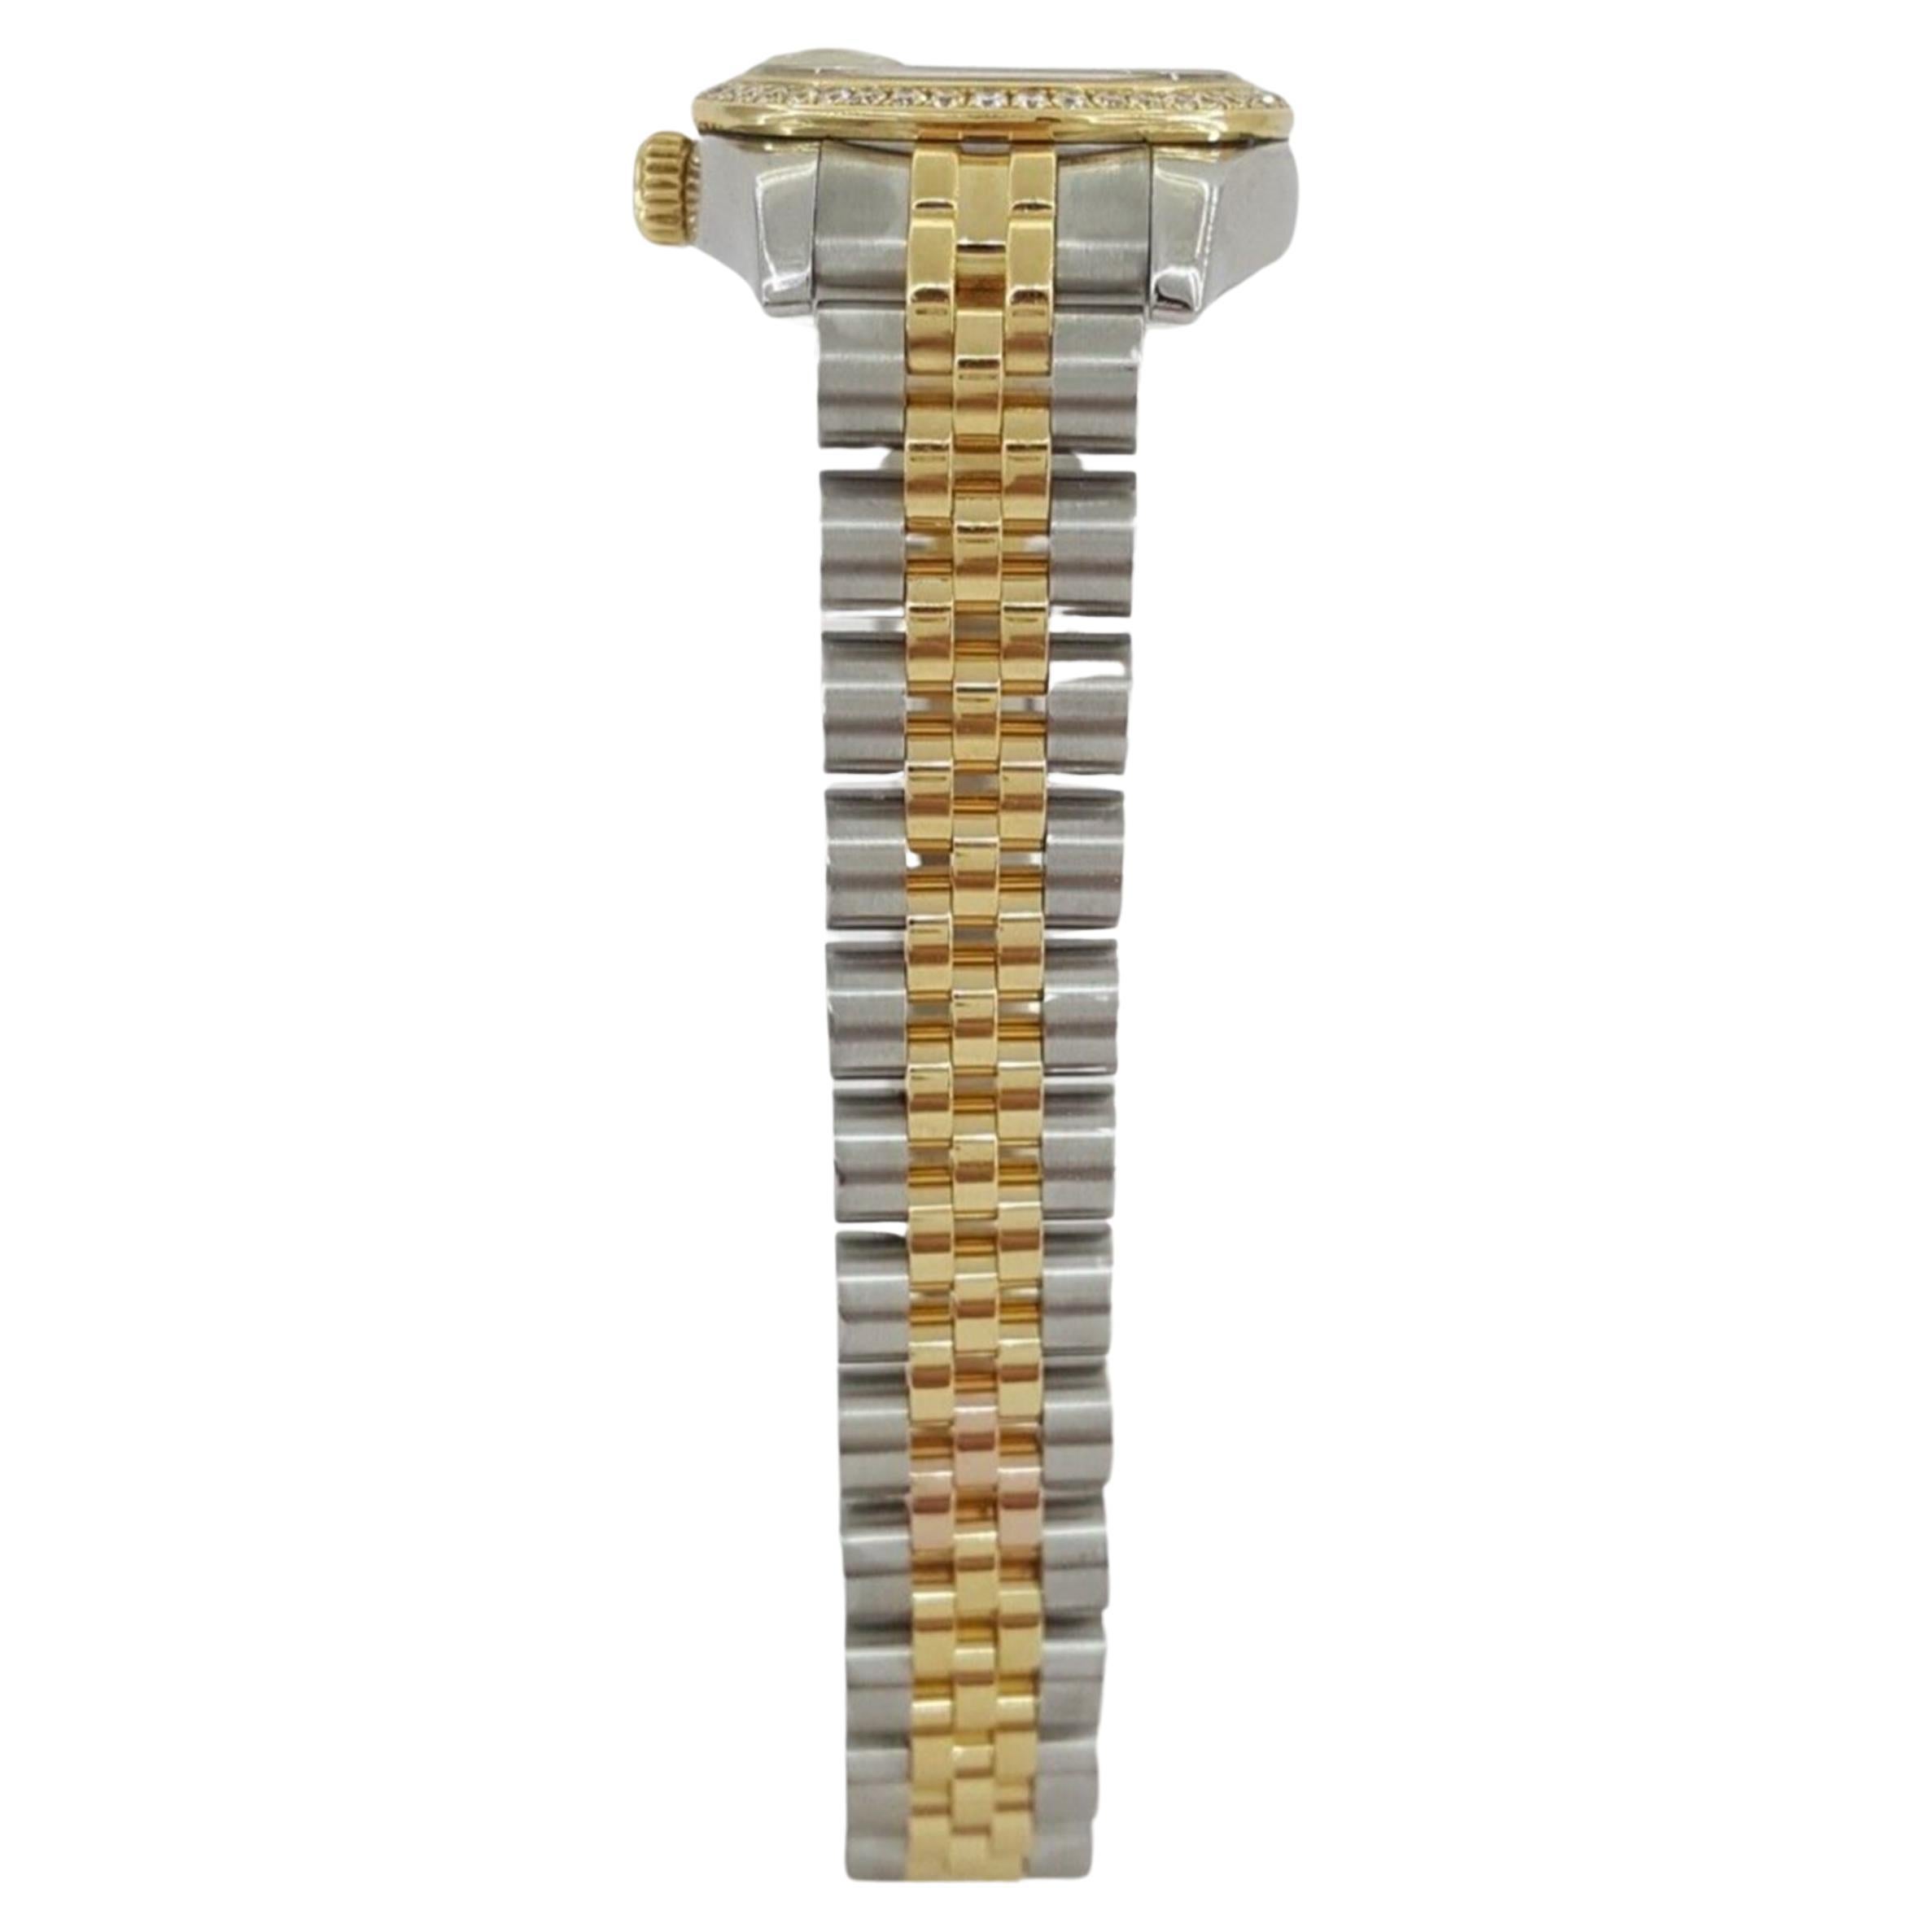 Die Rolex Lady DateJust , ein 26-mm-Zeitmesser aus Edelstahl und 18-karätigem Gelbgold, präsentiert sich mit einer Fabrik-Diamantlünette und einem Jubiläums-Diamantzifferblatt. Die Uhr ist mit einer verschraubten Krone ausgestattet und verfügt über